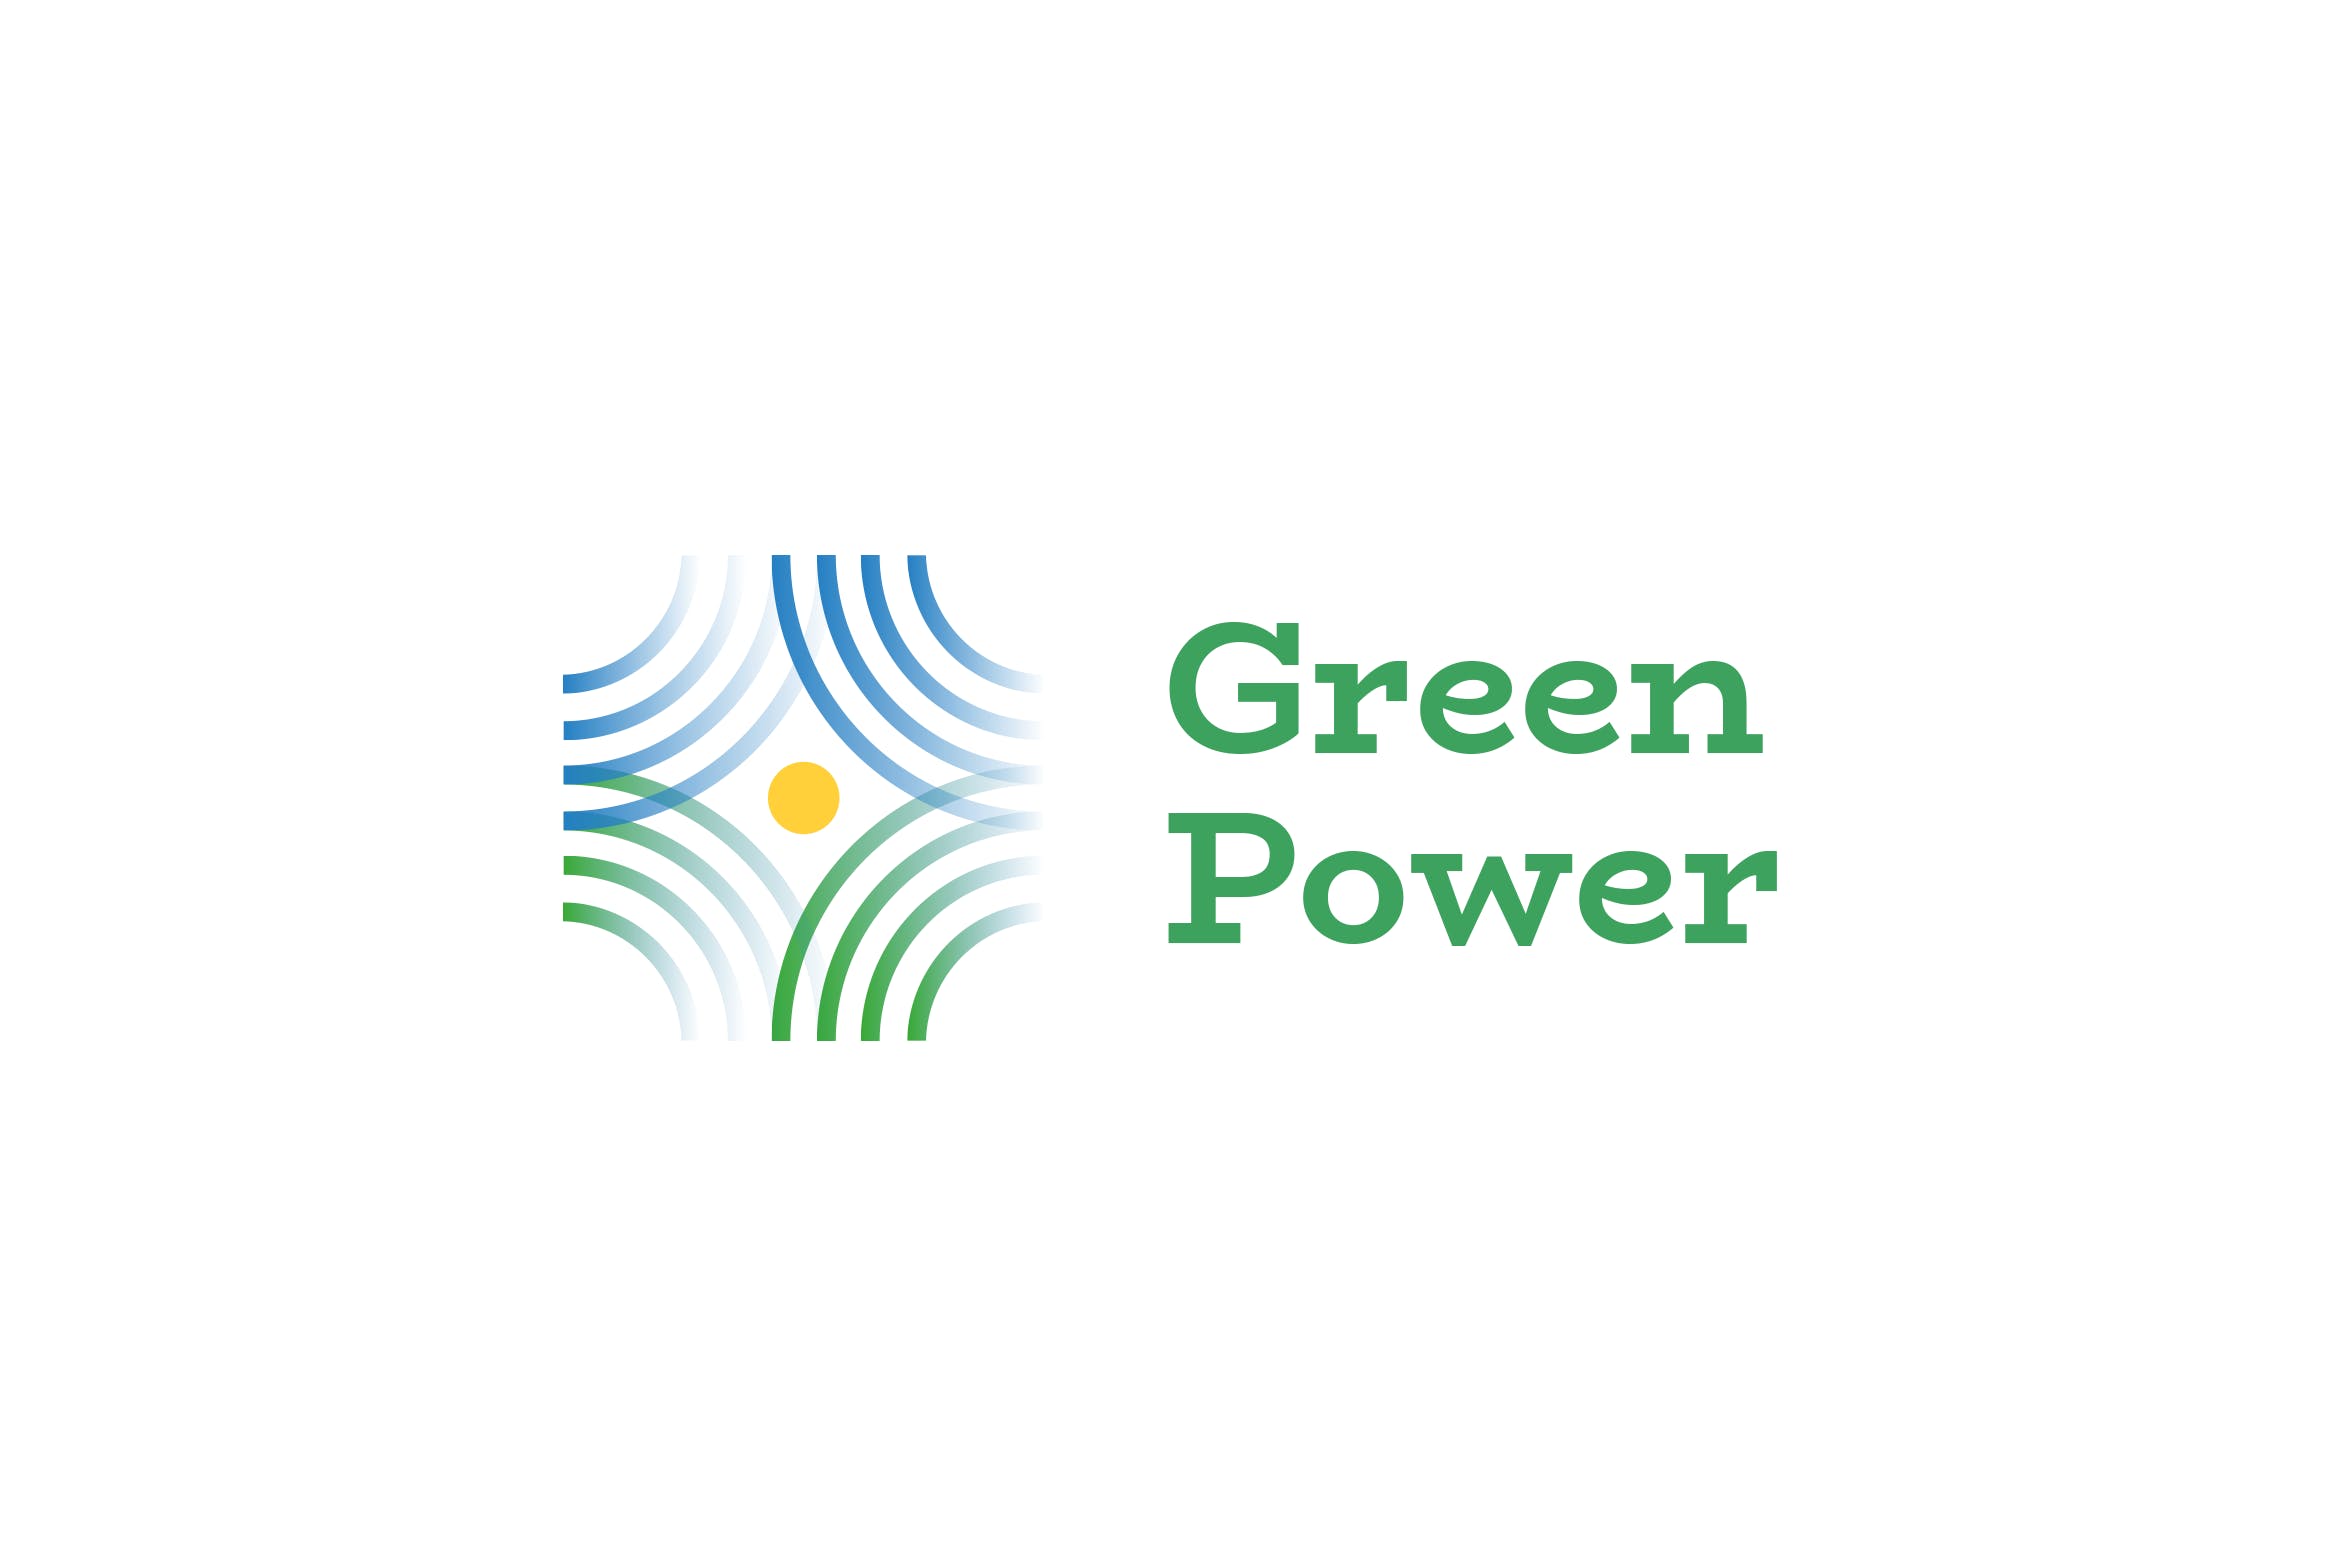 绿色能源&新能源品牌Logo设计第一素材精选模板 Green Power Logo插图